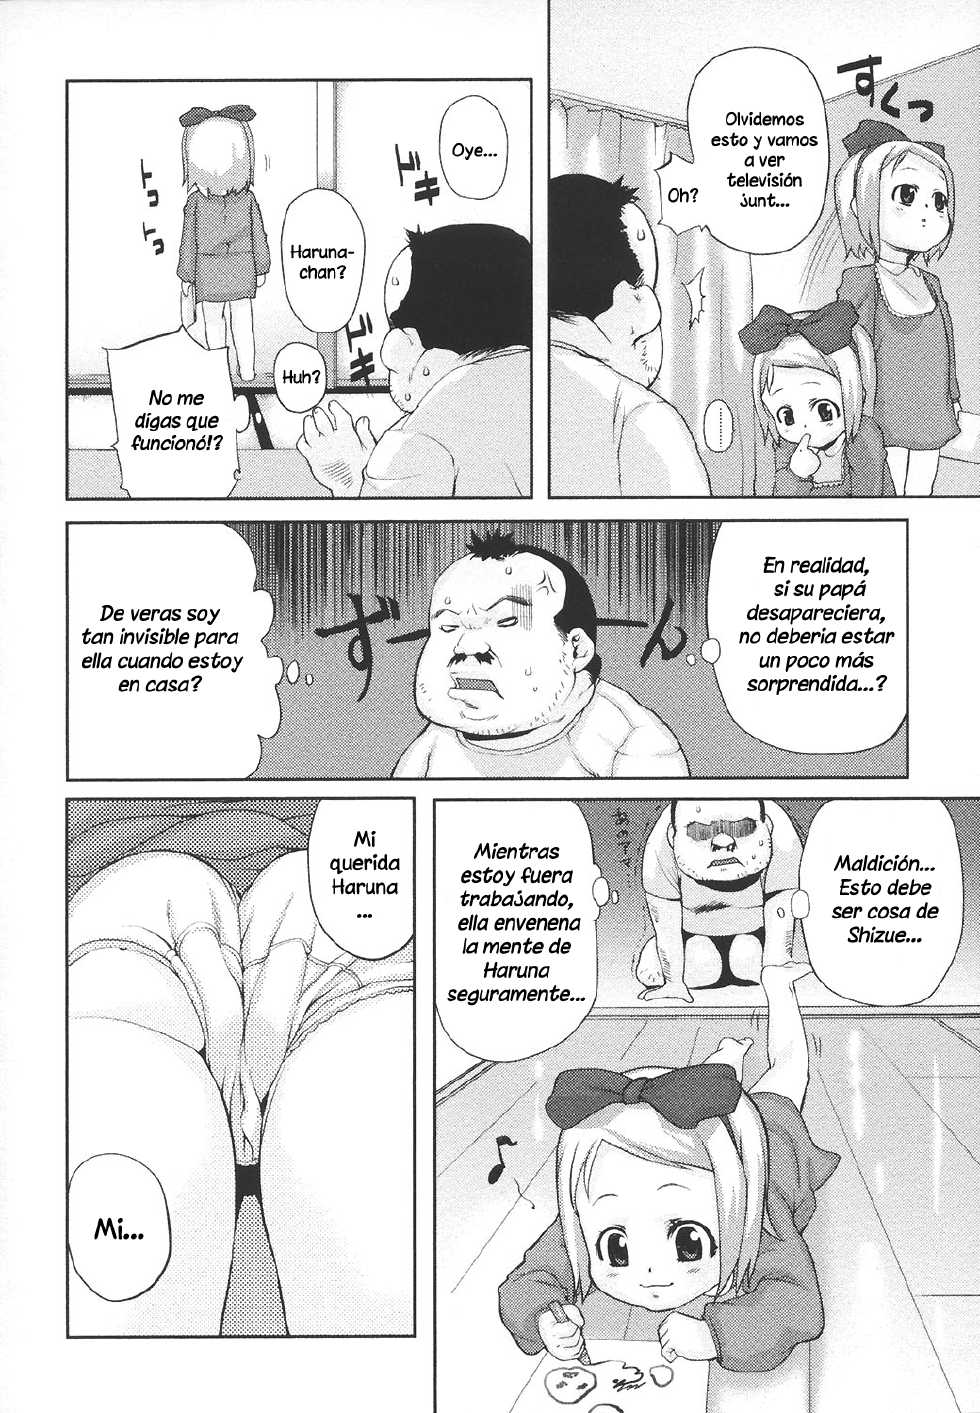 Mizu - Juego de niños - Page 2